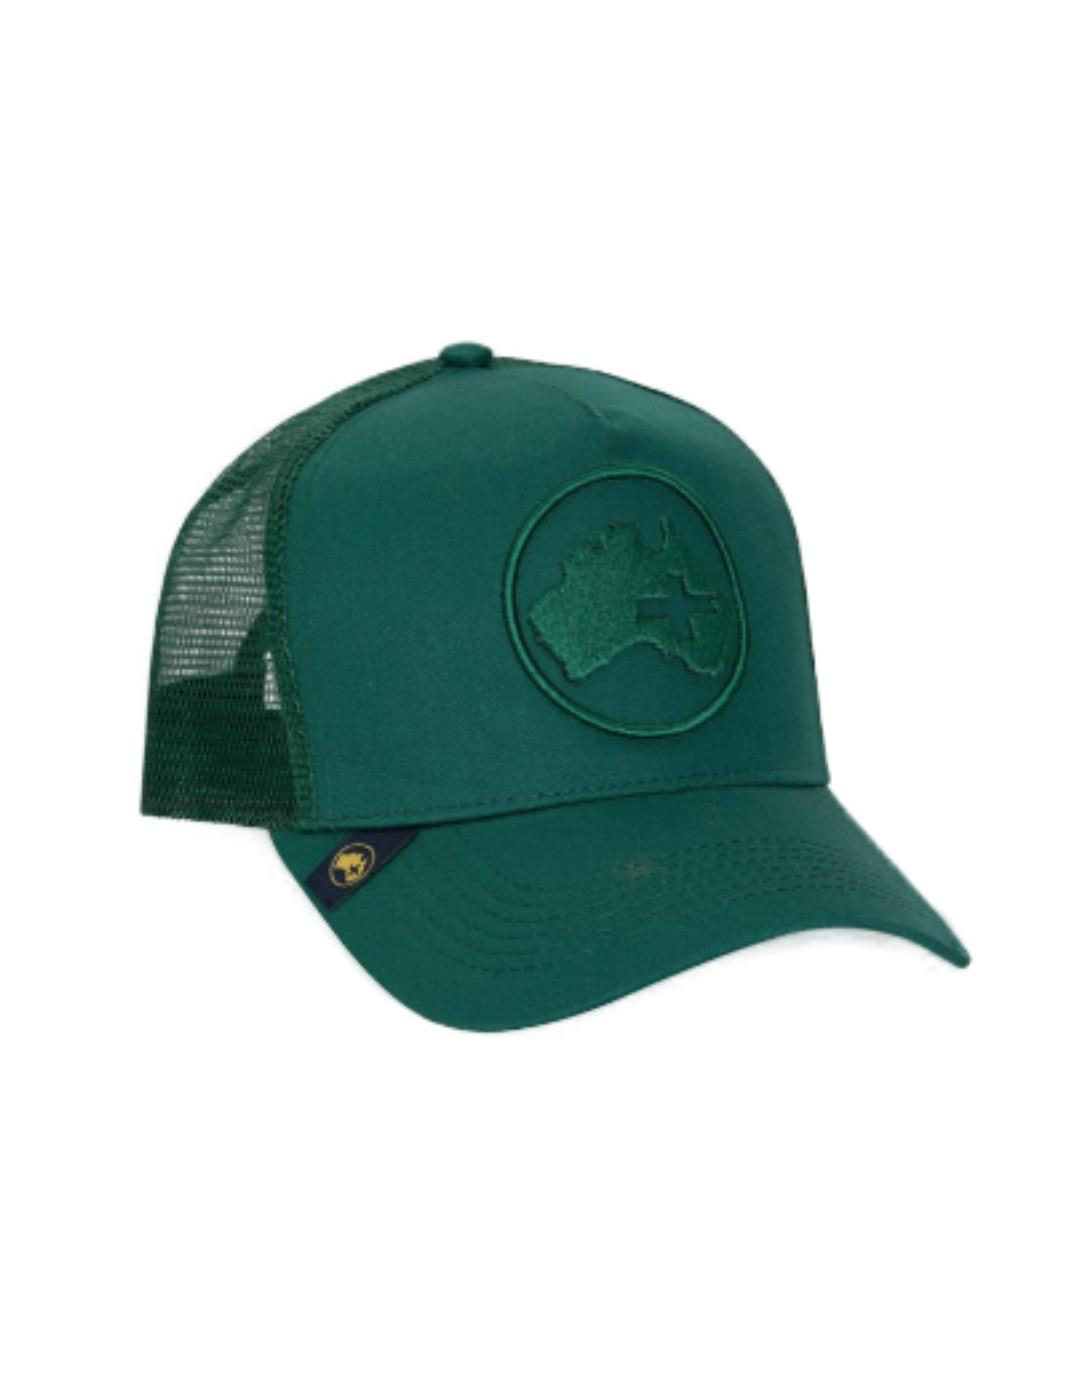 Gorra Altonadock color verde con logo unisex